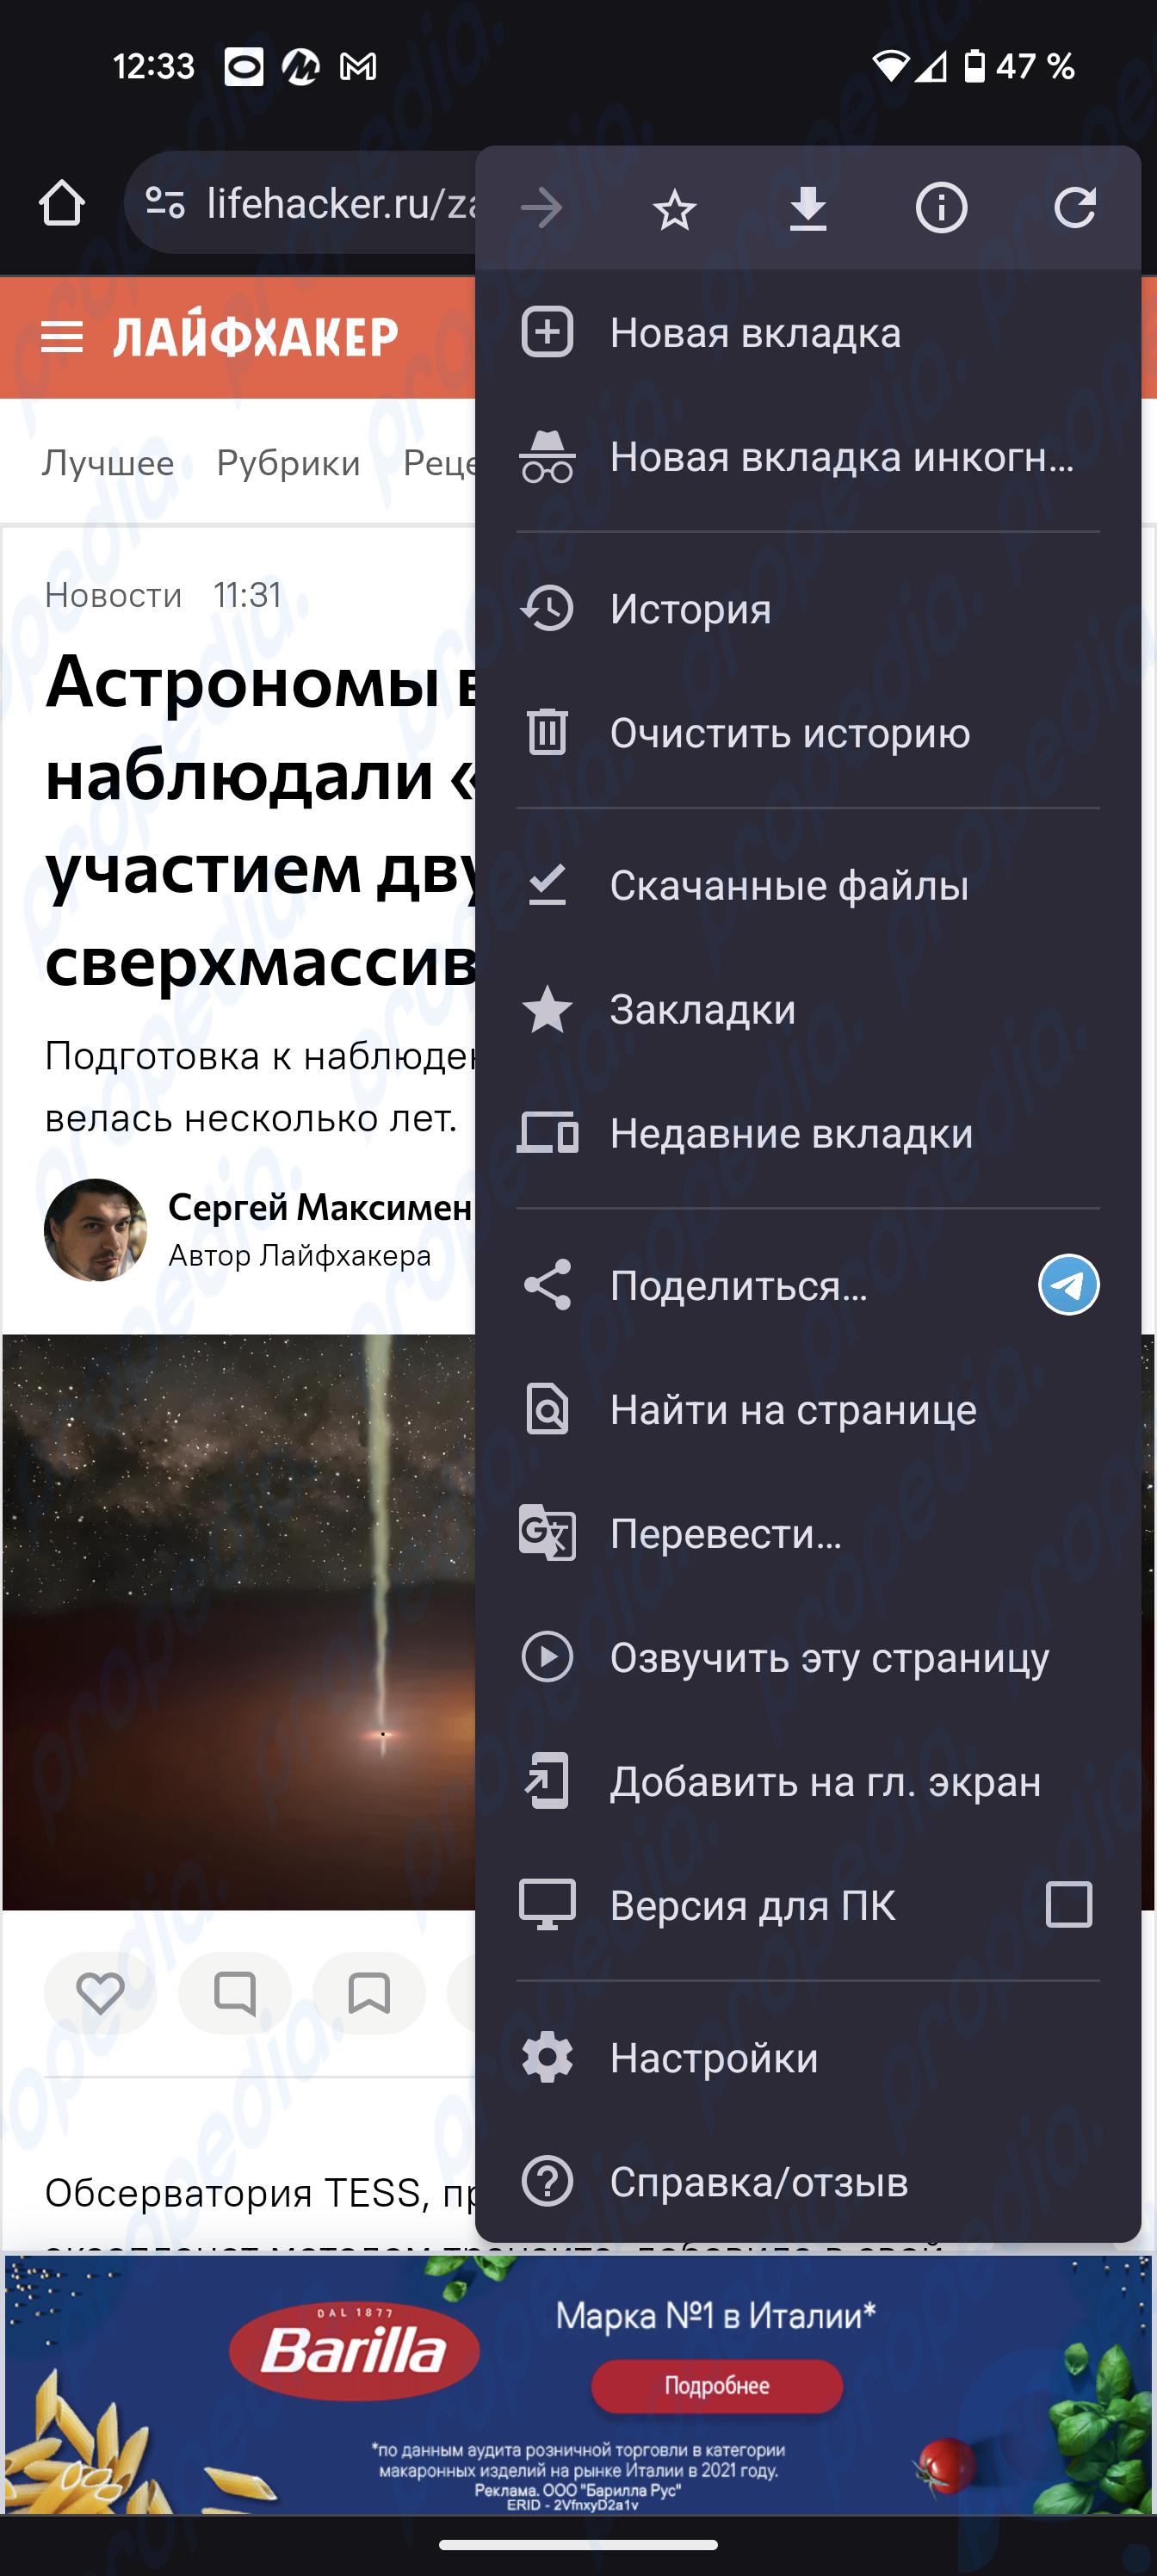 O navegador Chrome no Android aprendeu a ler o conteúdo das páginas da web em russo